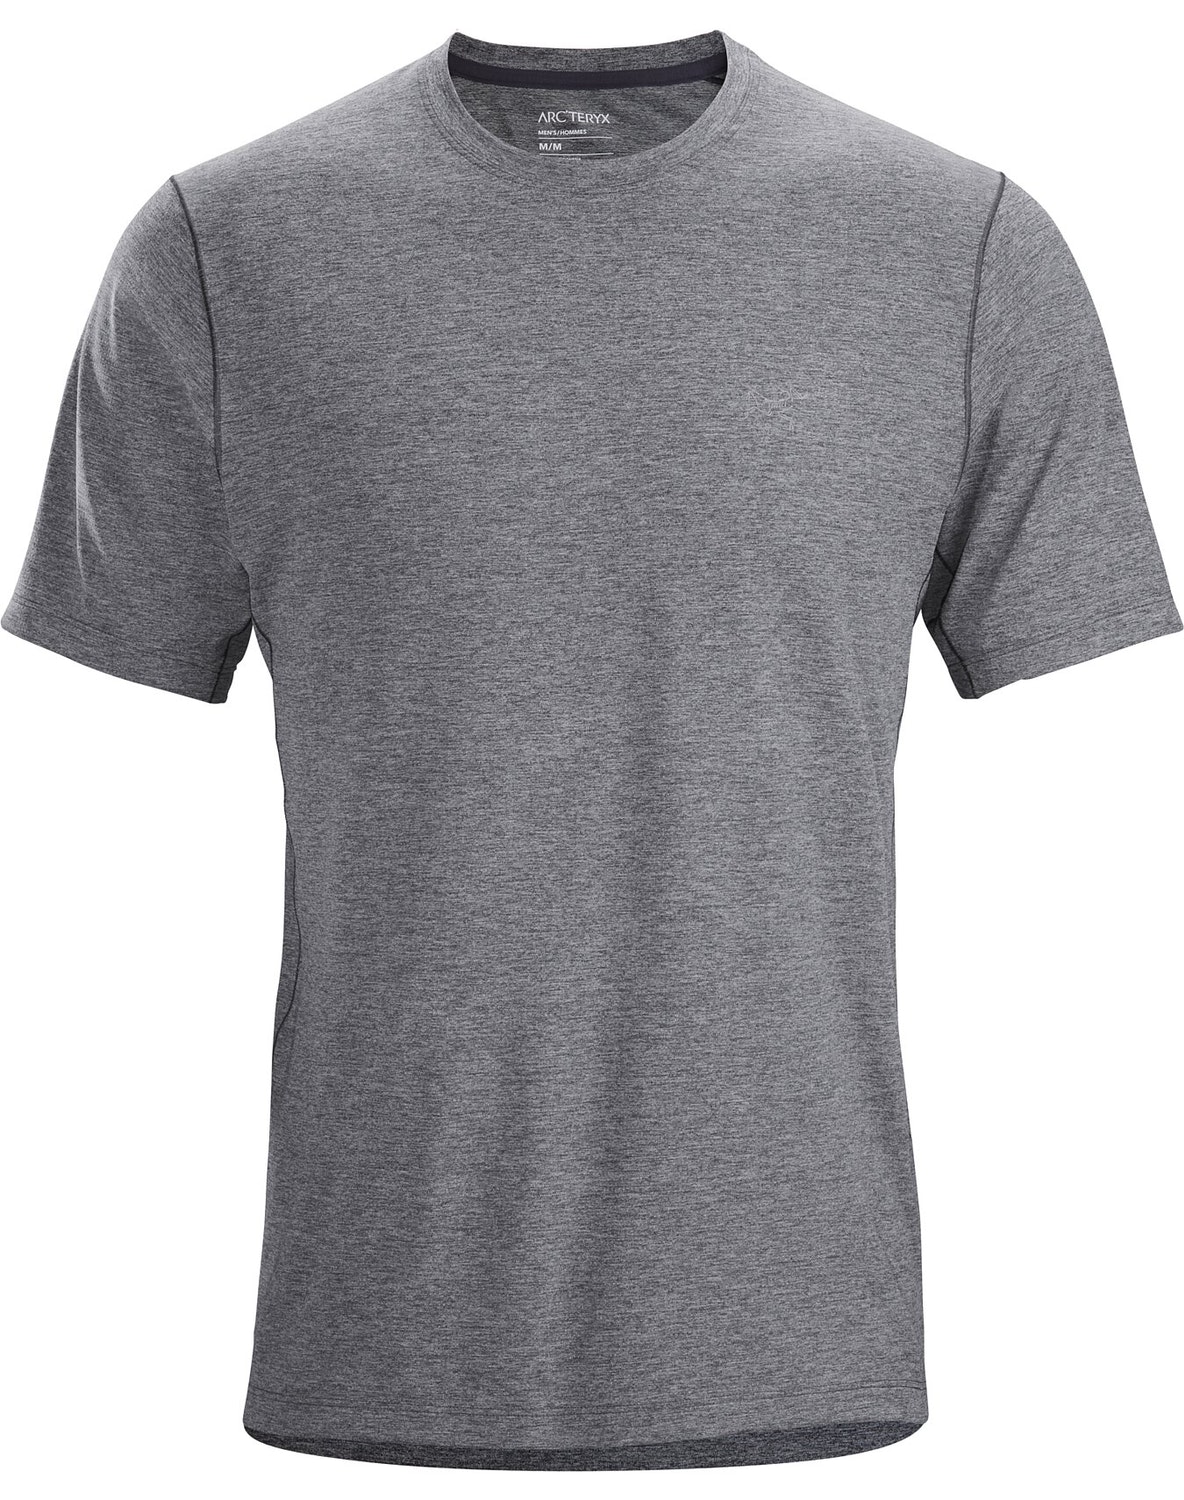 T-shirt Arc'teryx Cormac Comp Uomo Grigie - IT-45717